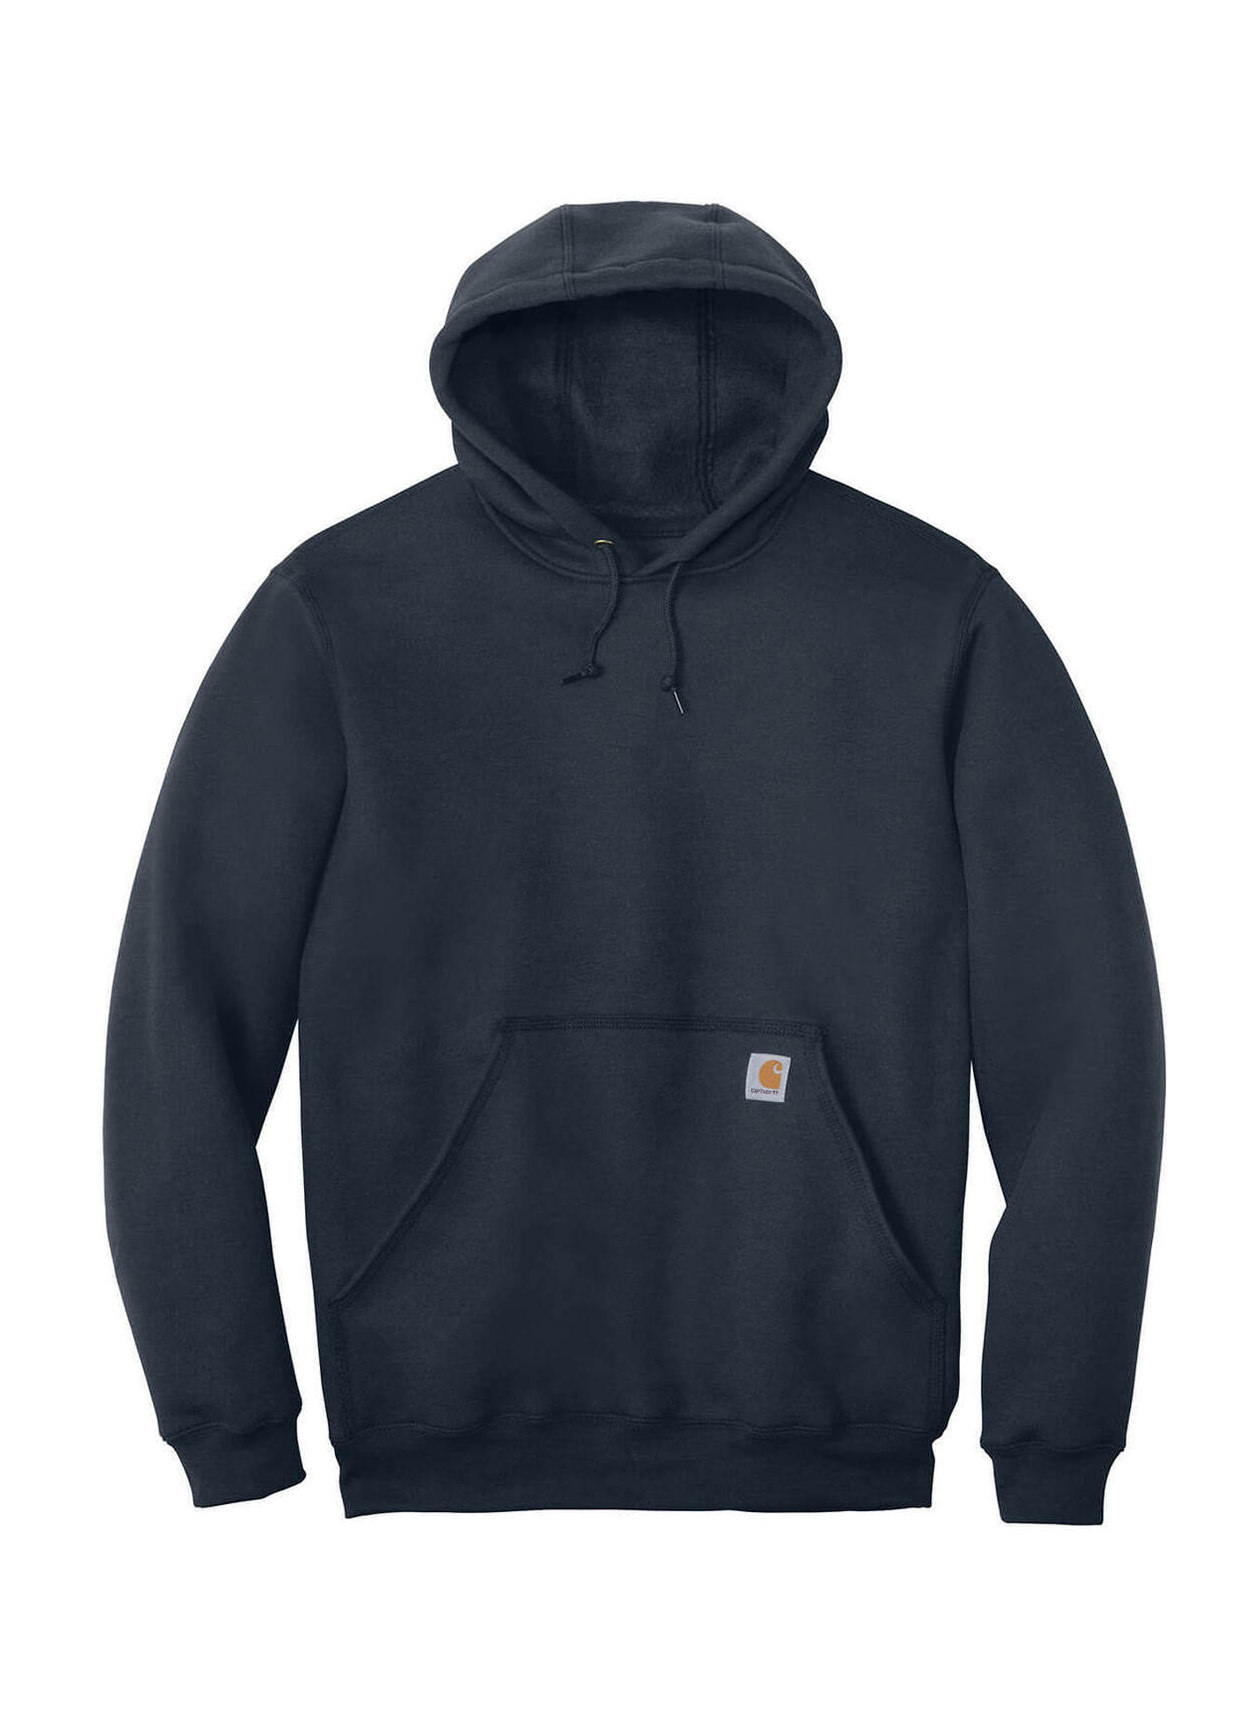 Carhartt Men's New Navy Midweight Hooded Sweatshirt | Printed Hoodies